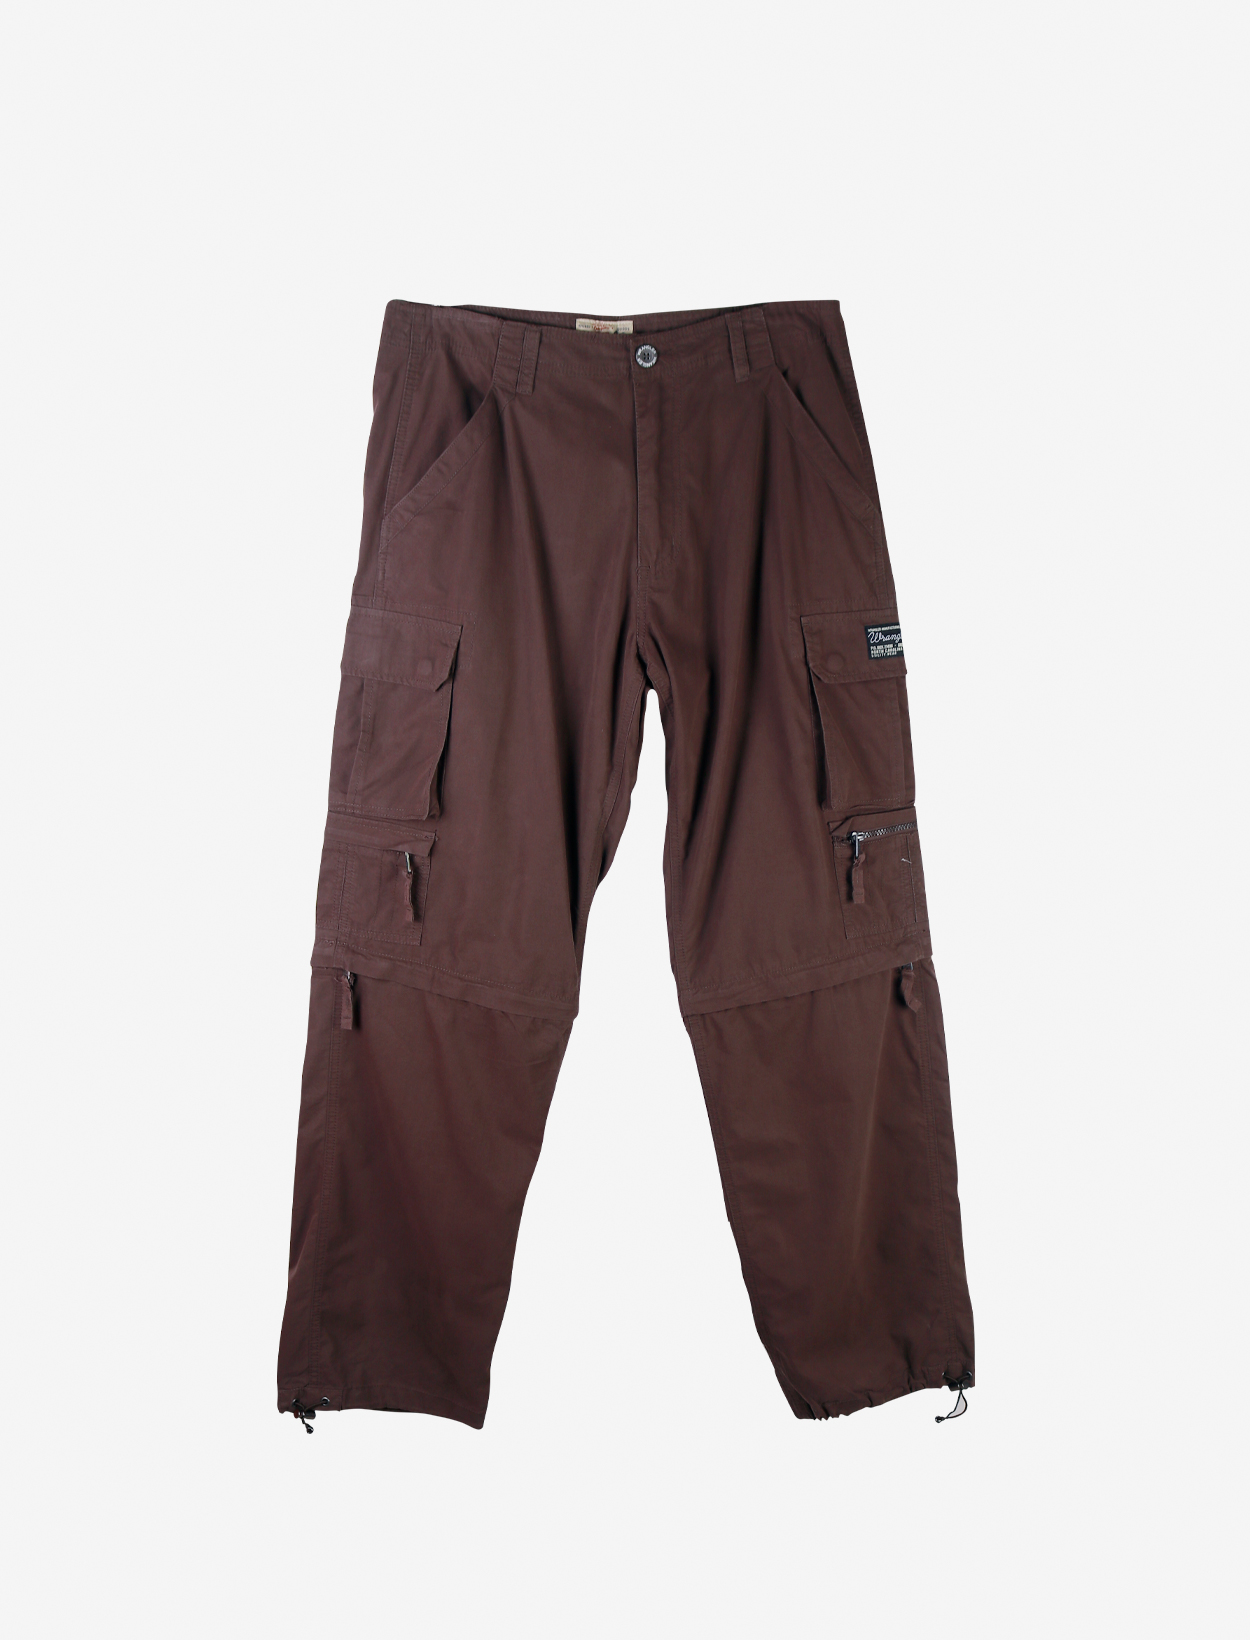 Wrangler Mens Medium Regular Tapered Cargo Pants in Brown | Lazada PH